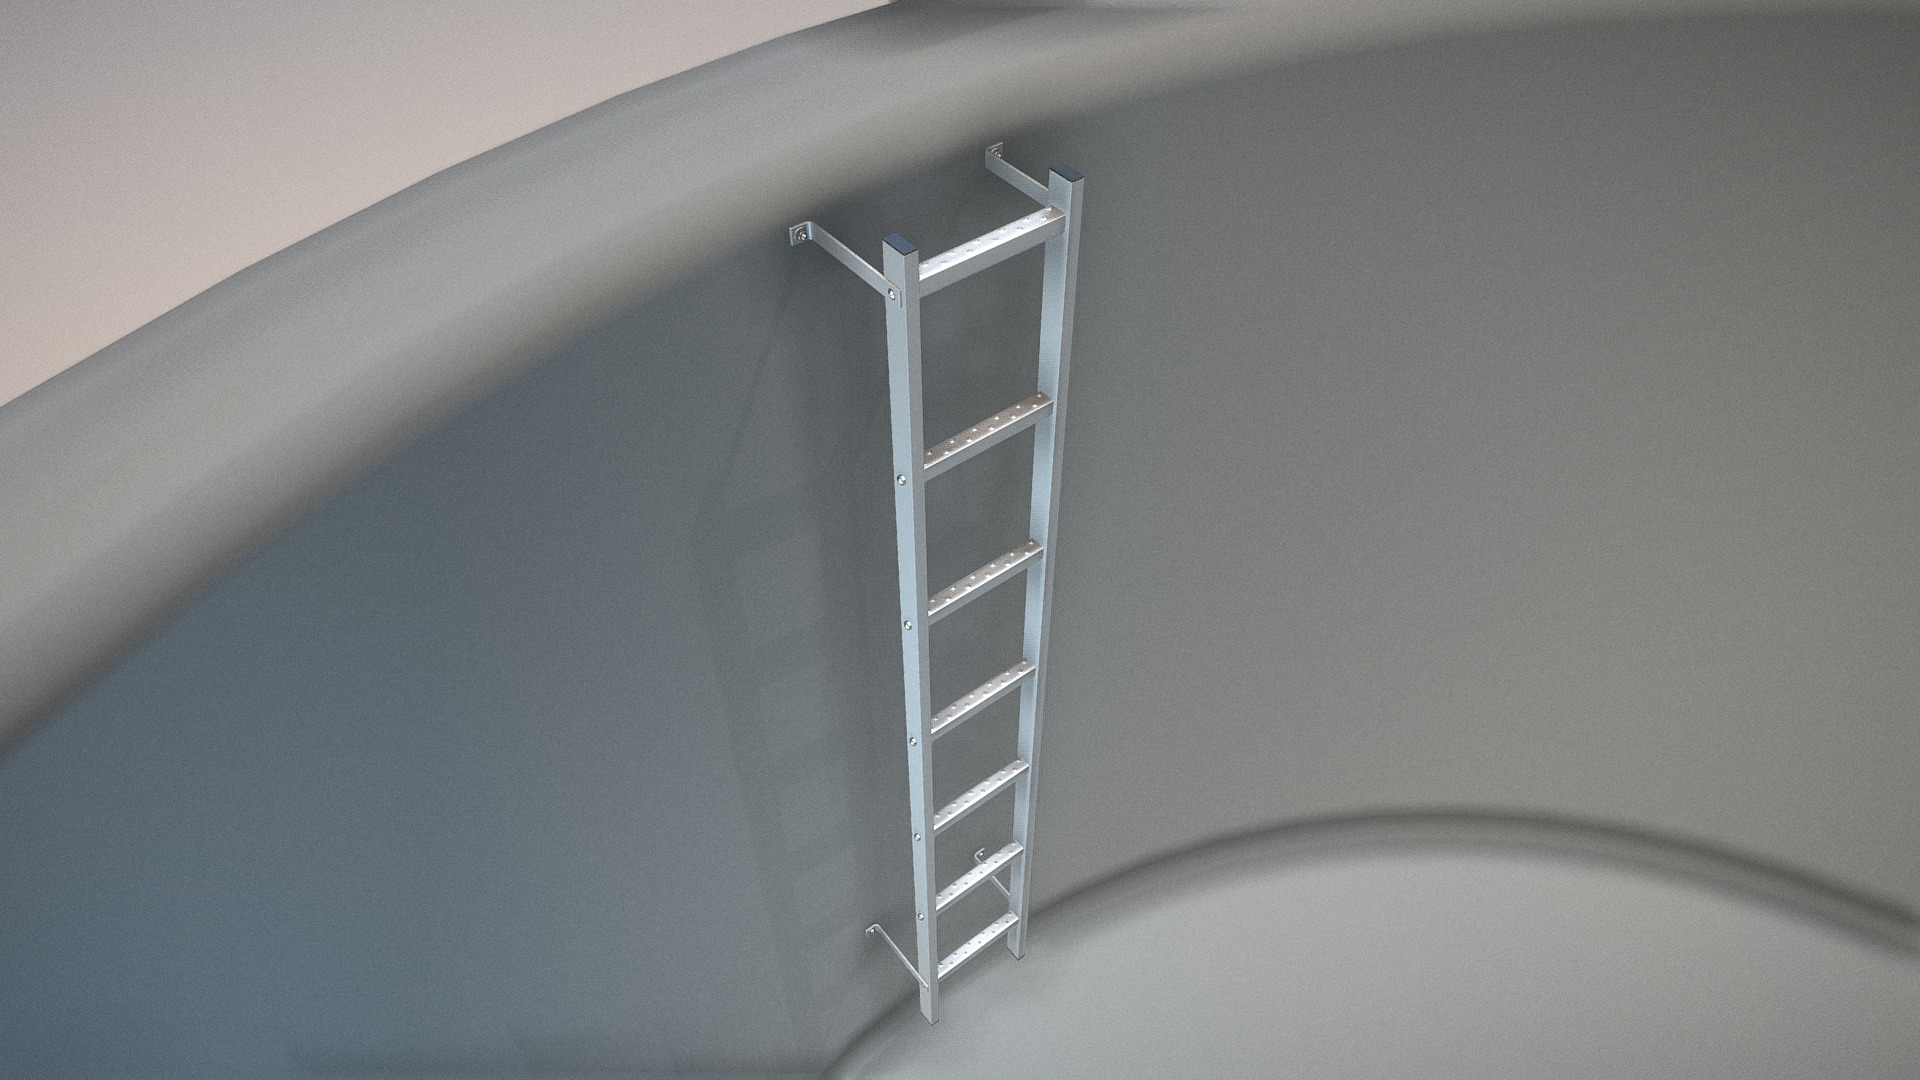 3D model Vertical Wall Mount Ladder (High-Poly) - This is a 3D model of the Vertical Wall Mount Ladder (High-Poly). The 3D model is about a ladder against a wall.